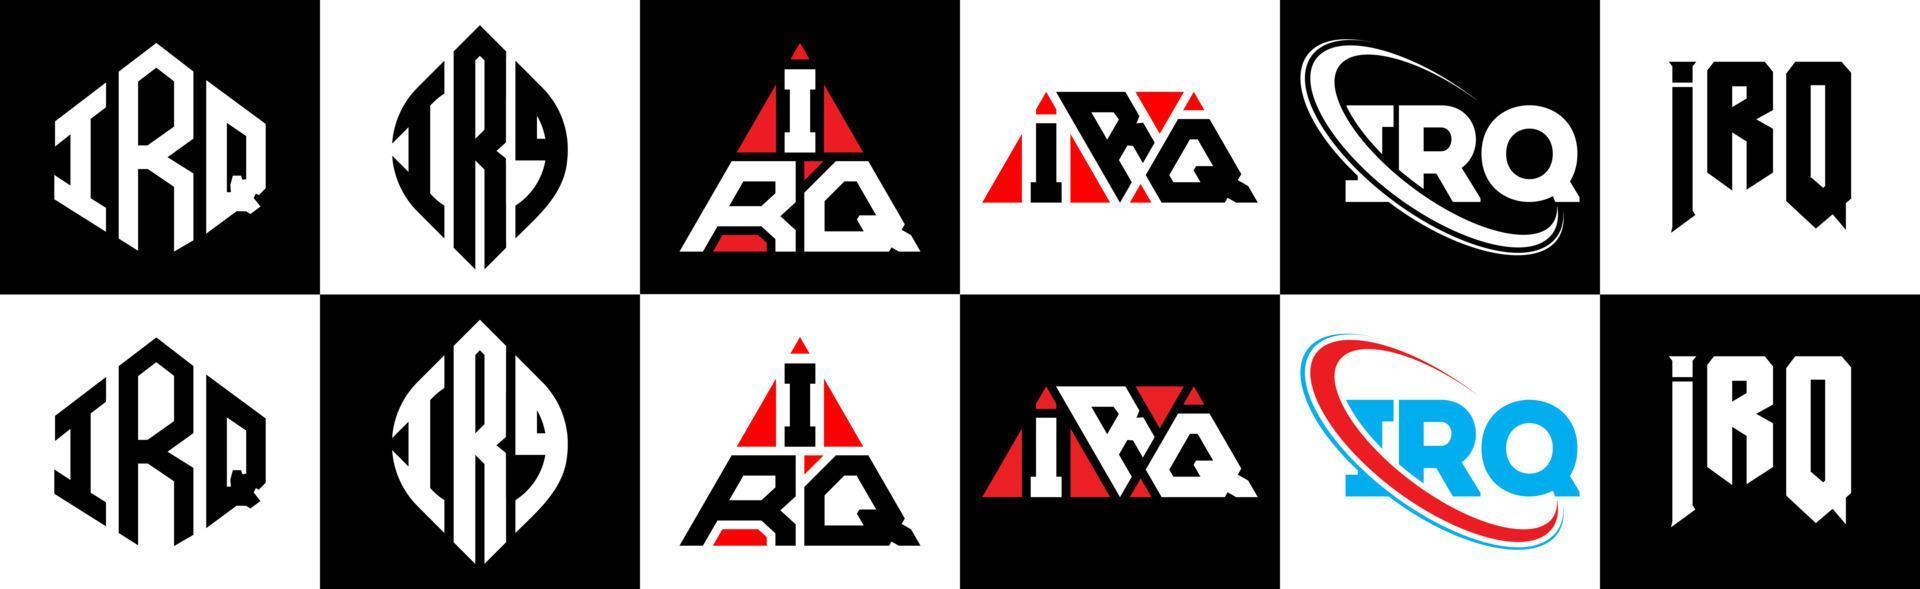 création de logo de lettre irq en six styles. polygone irq, cercle, triangle, hexagone, style plat et simple avec logo de lettre de variation de couleur noir et blanc dans un plan de travail. logo minimaliste et classique irq vecteur